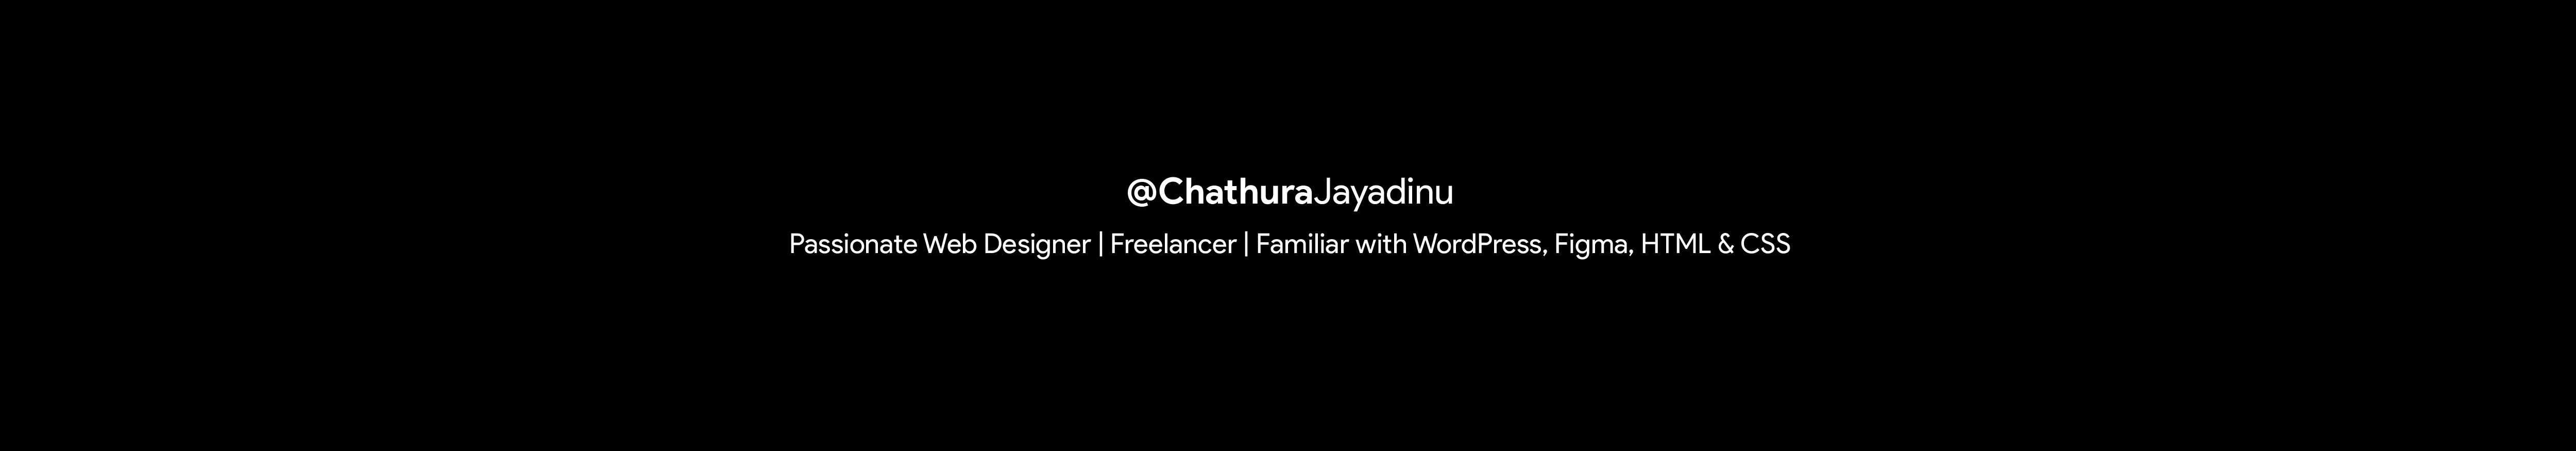 Chathura Jayadinu's profile banner